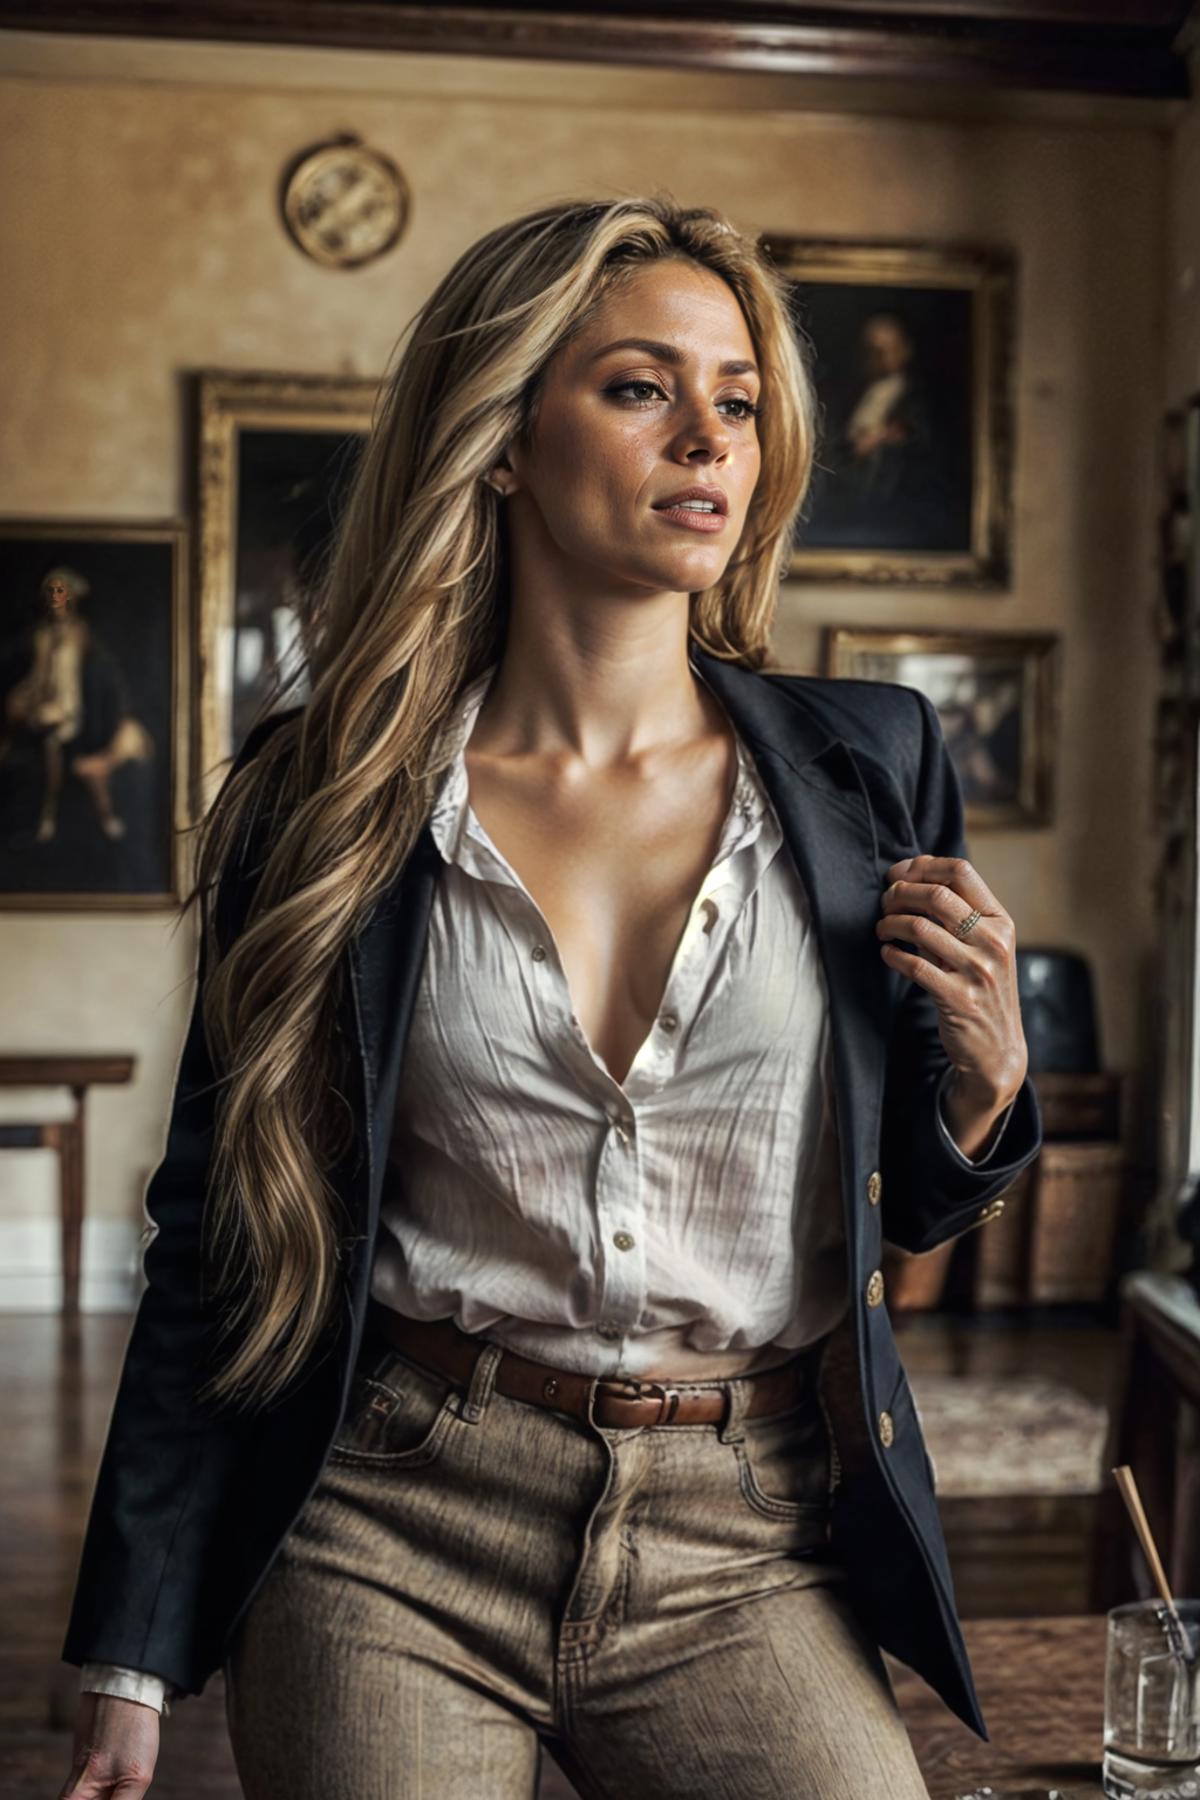 Shakira image by ZombieHead